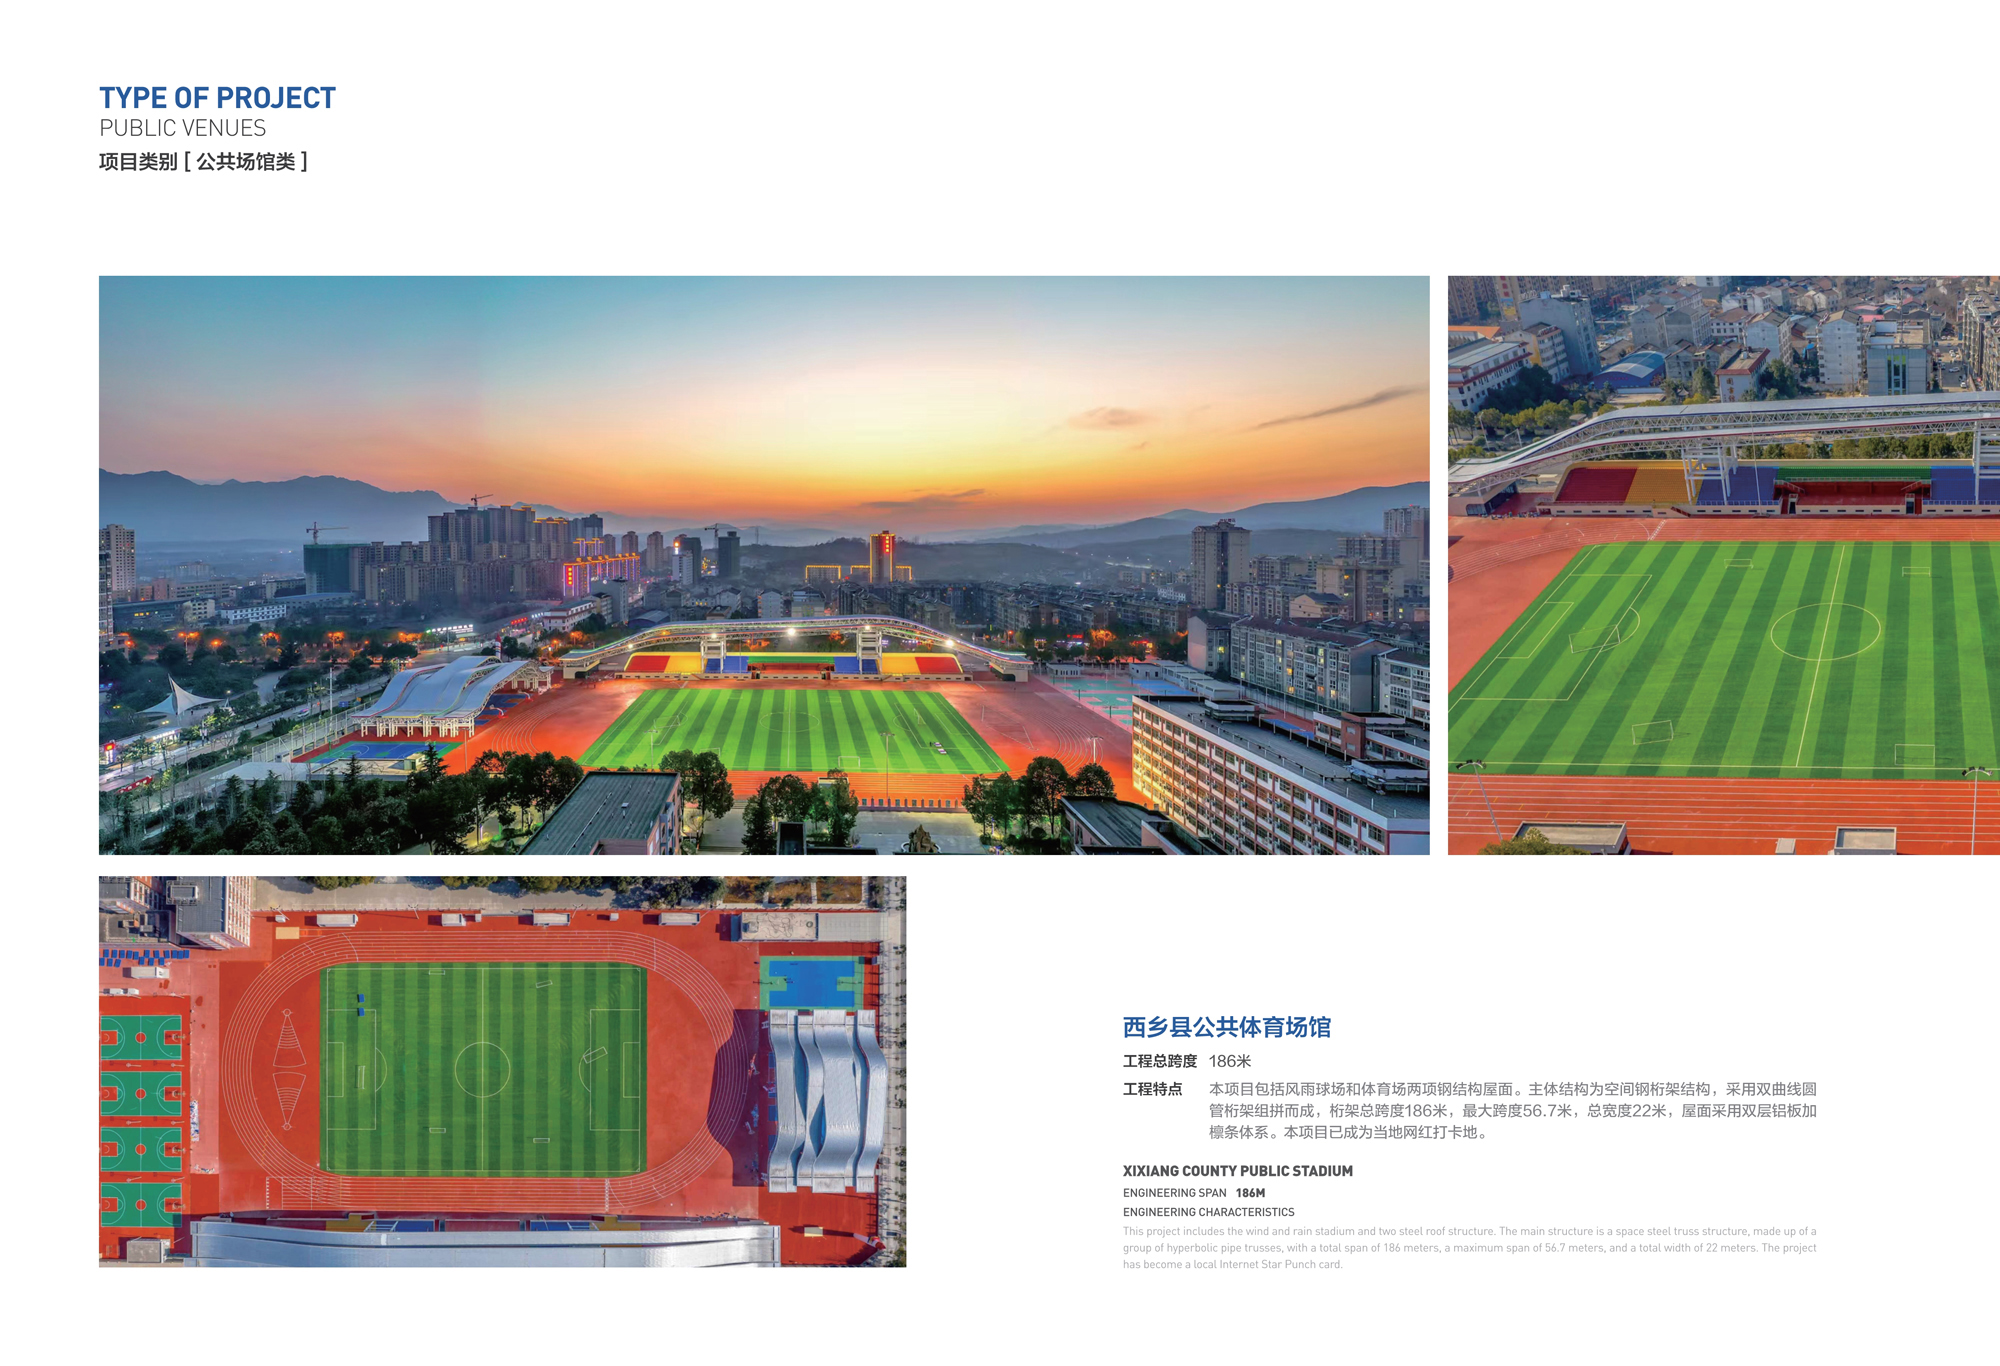 Xixiang County Public Stadium